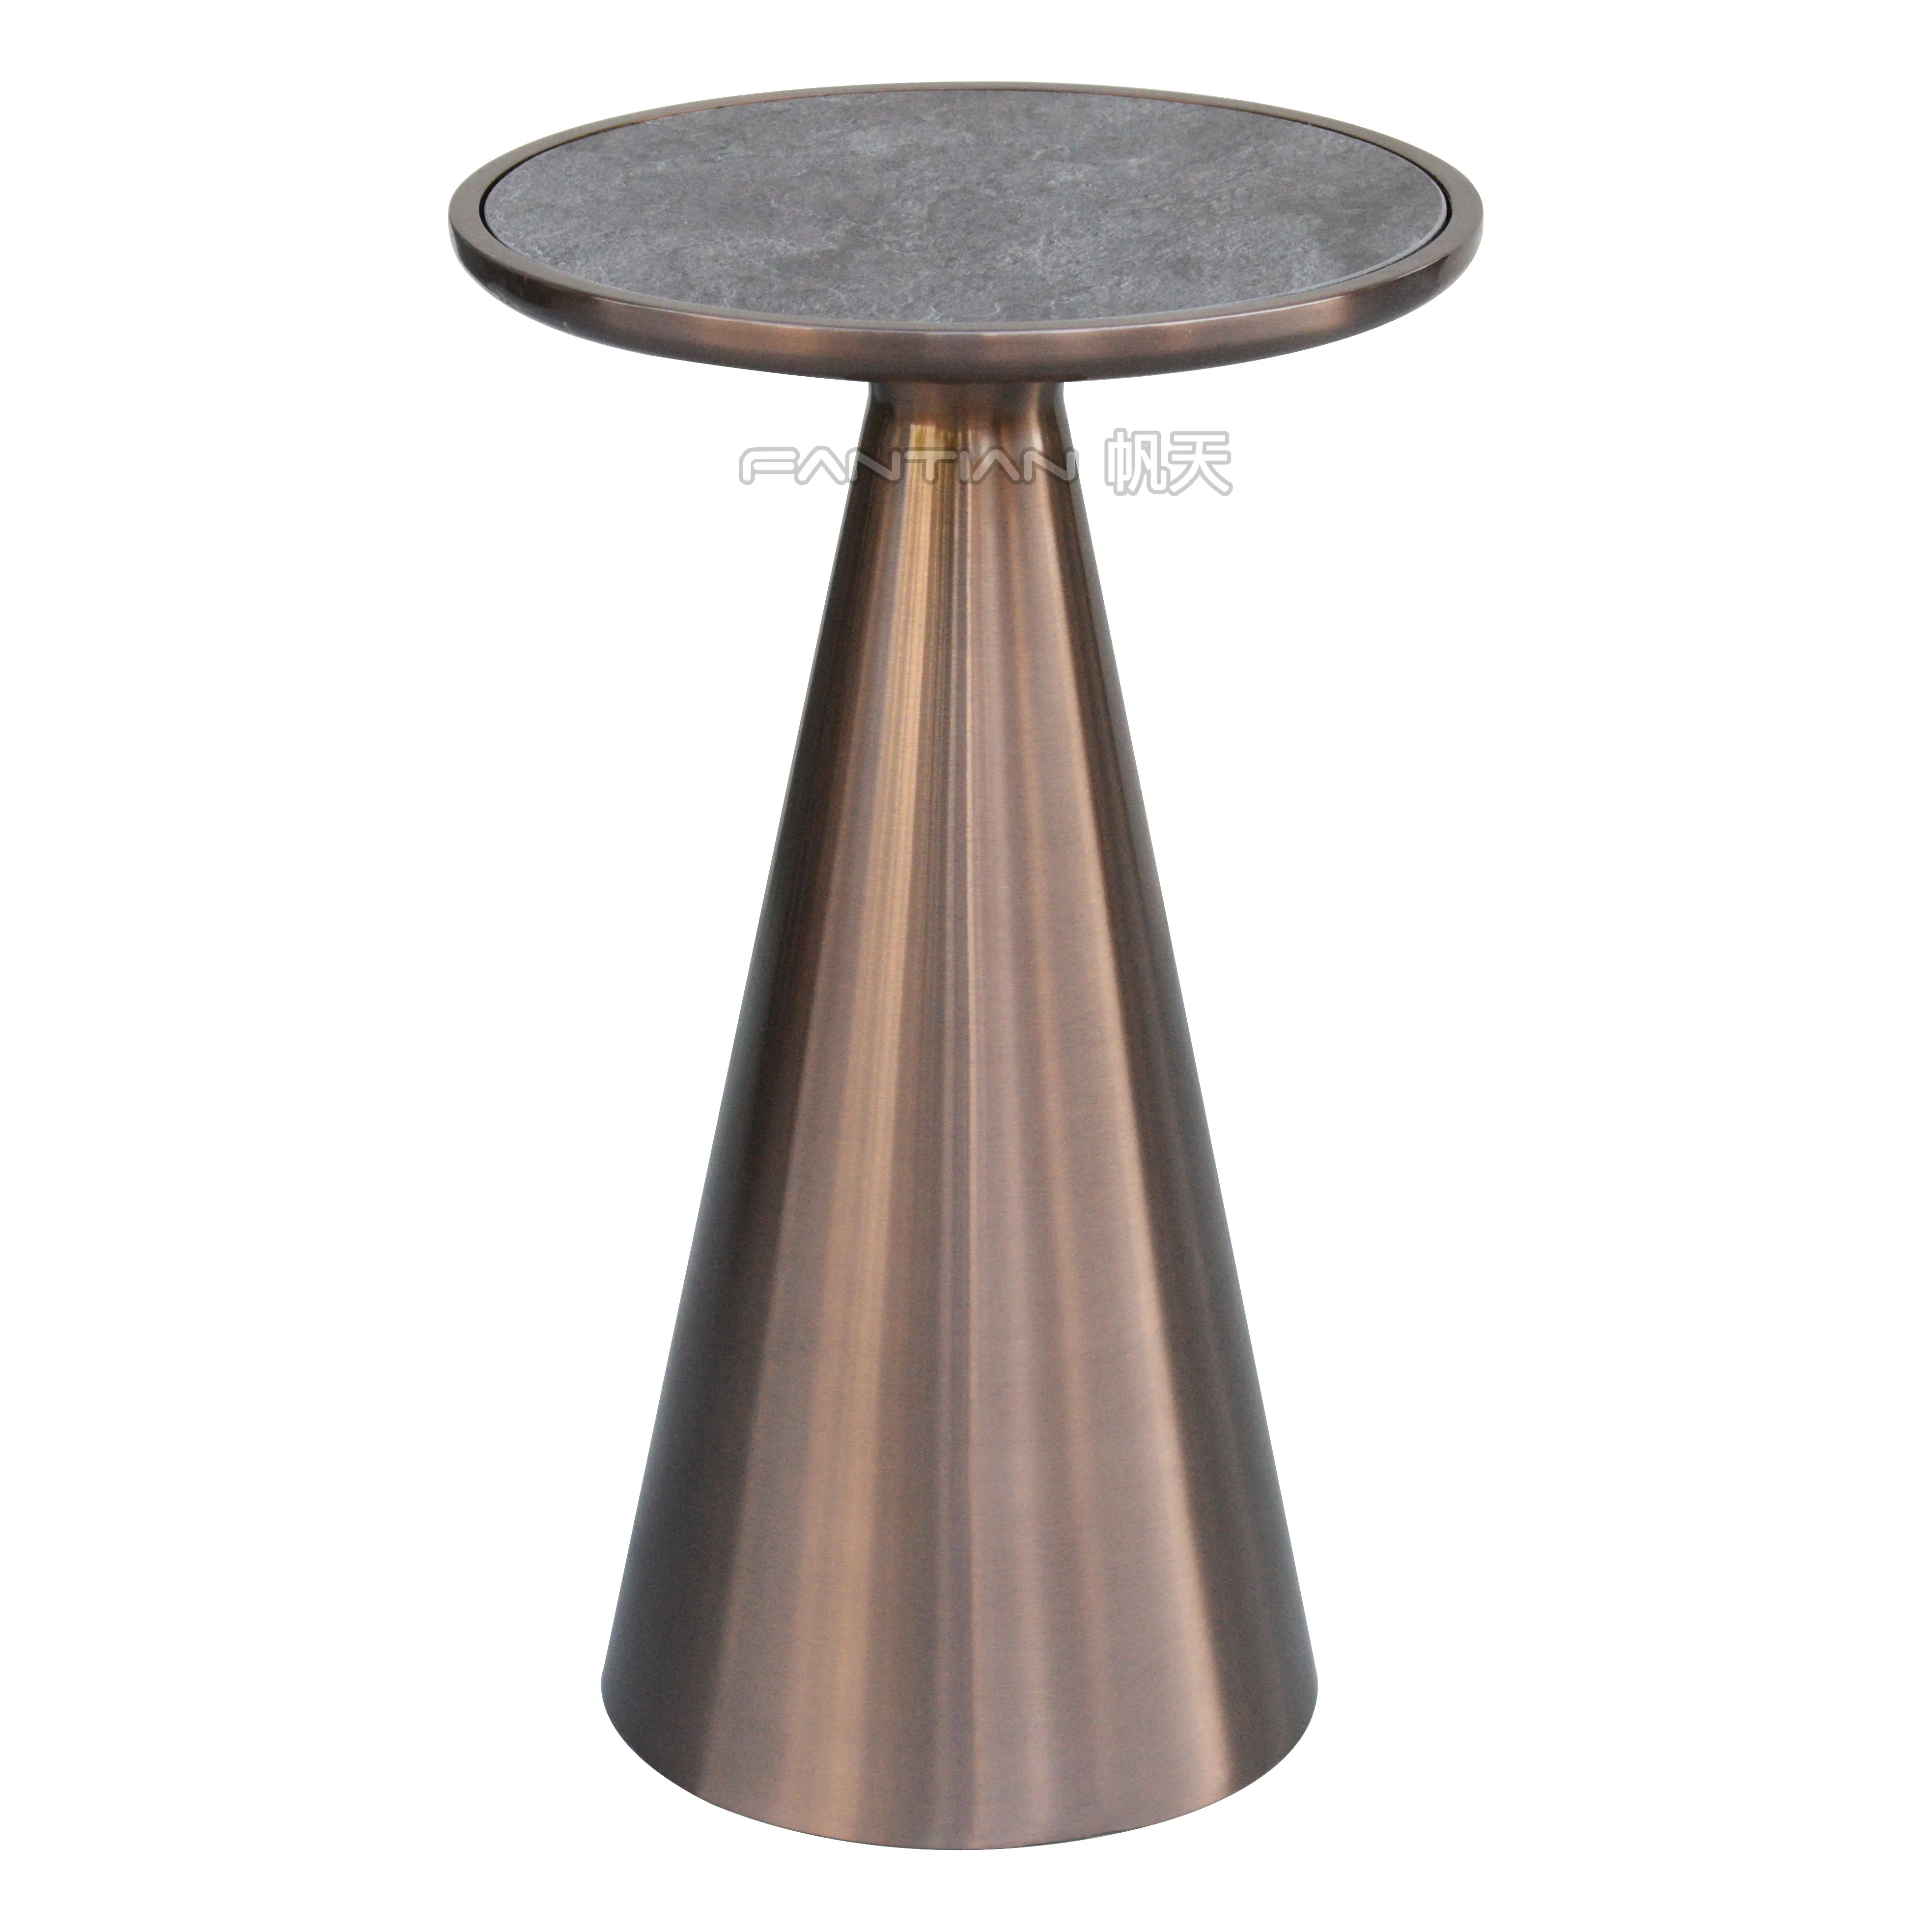 Venta caliente moderna mesa de comedor de metal de base de acero inoxidable hotel de la mesa de café pierna